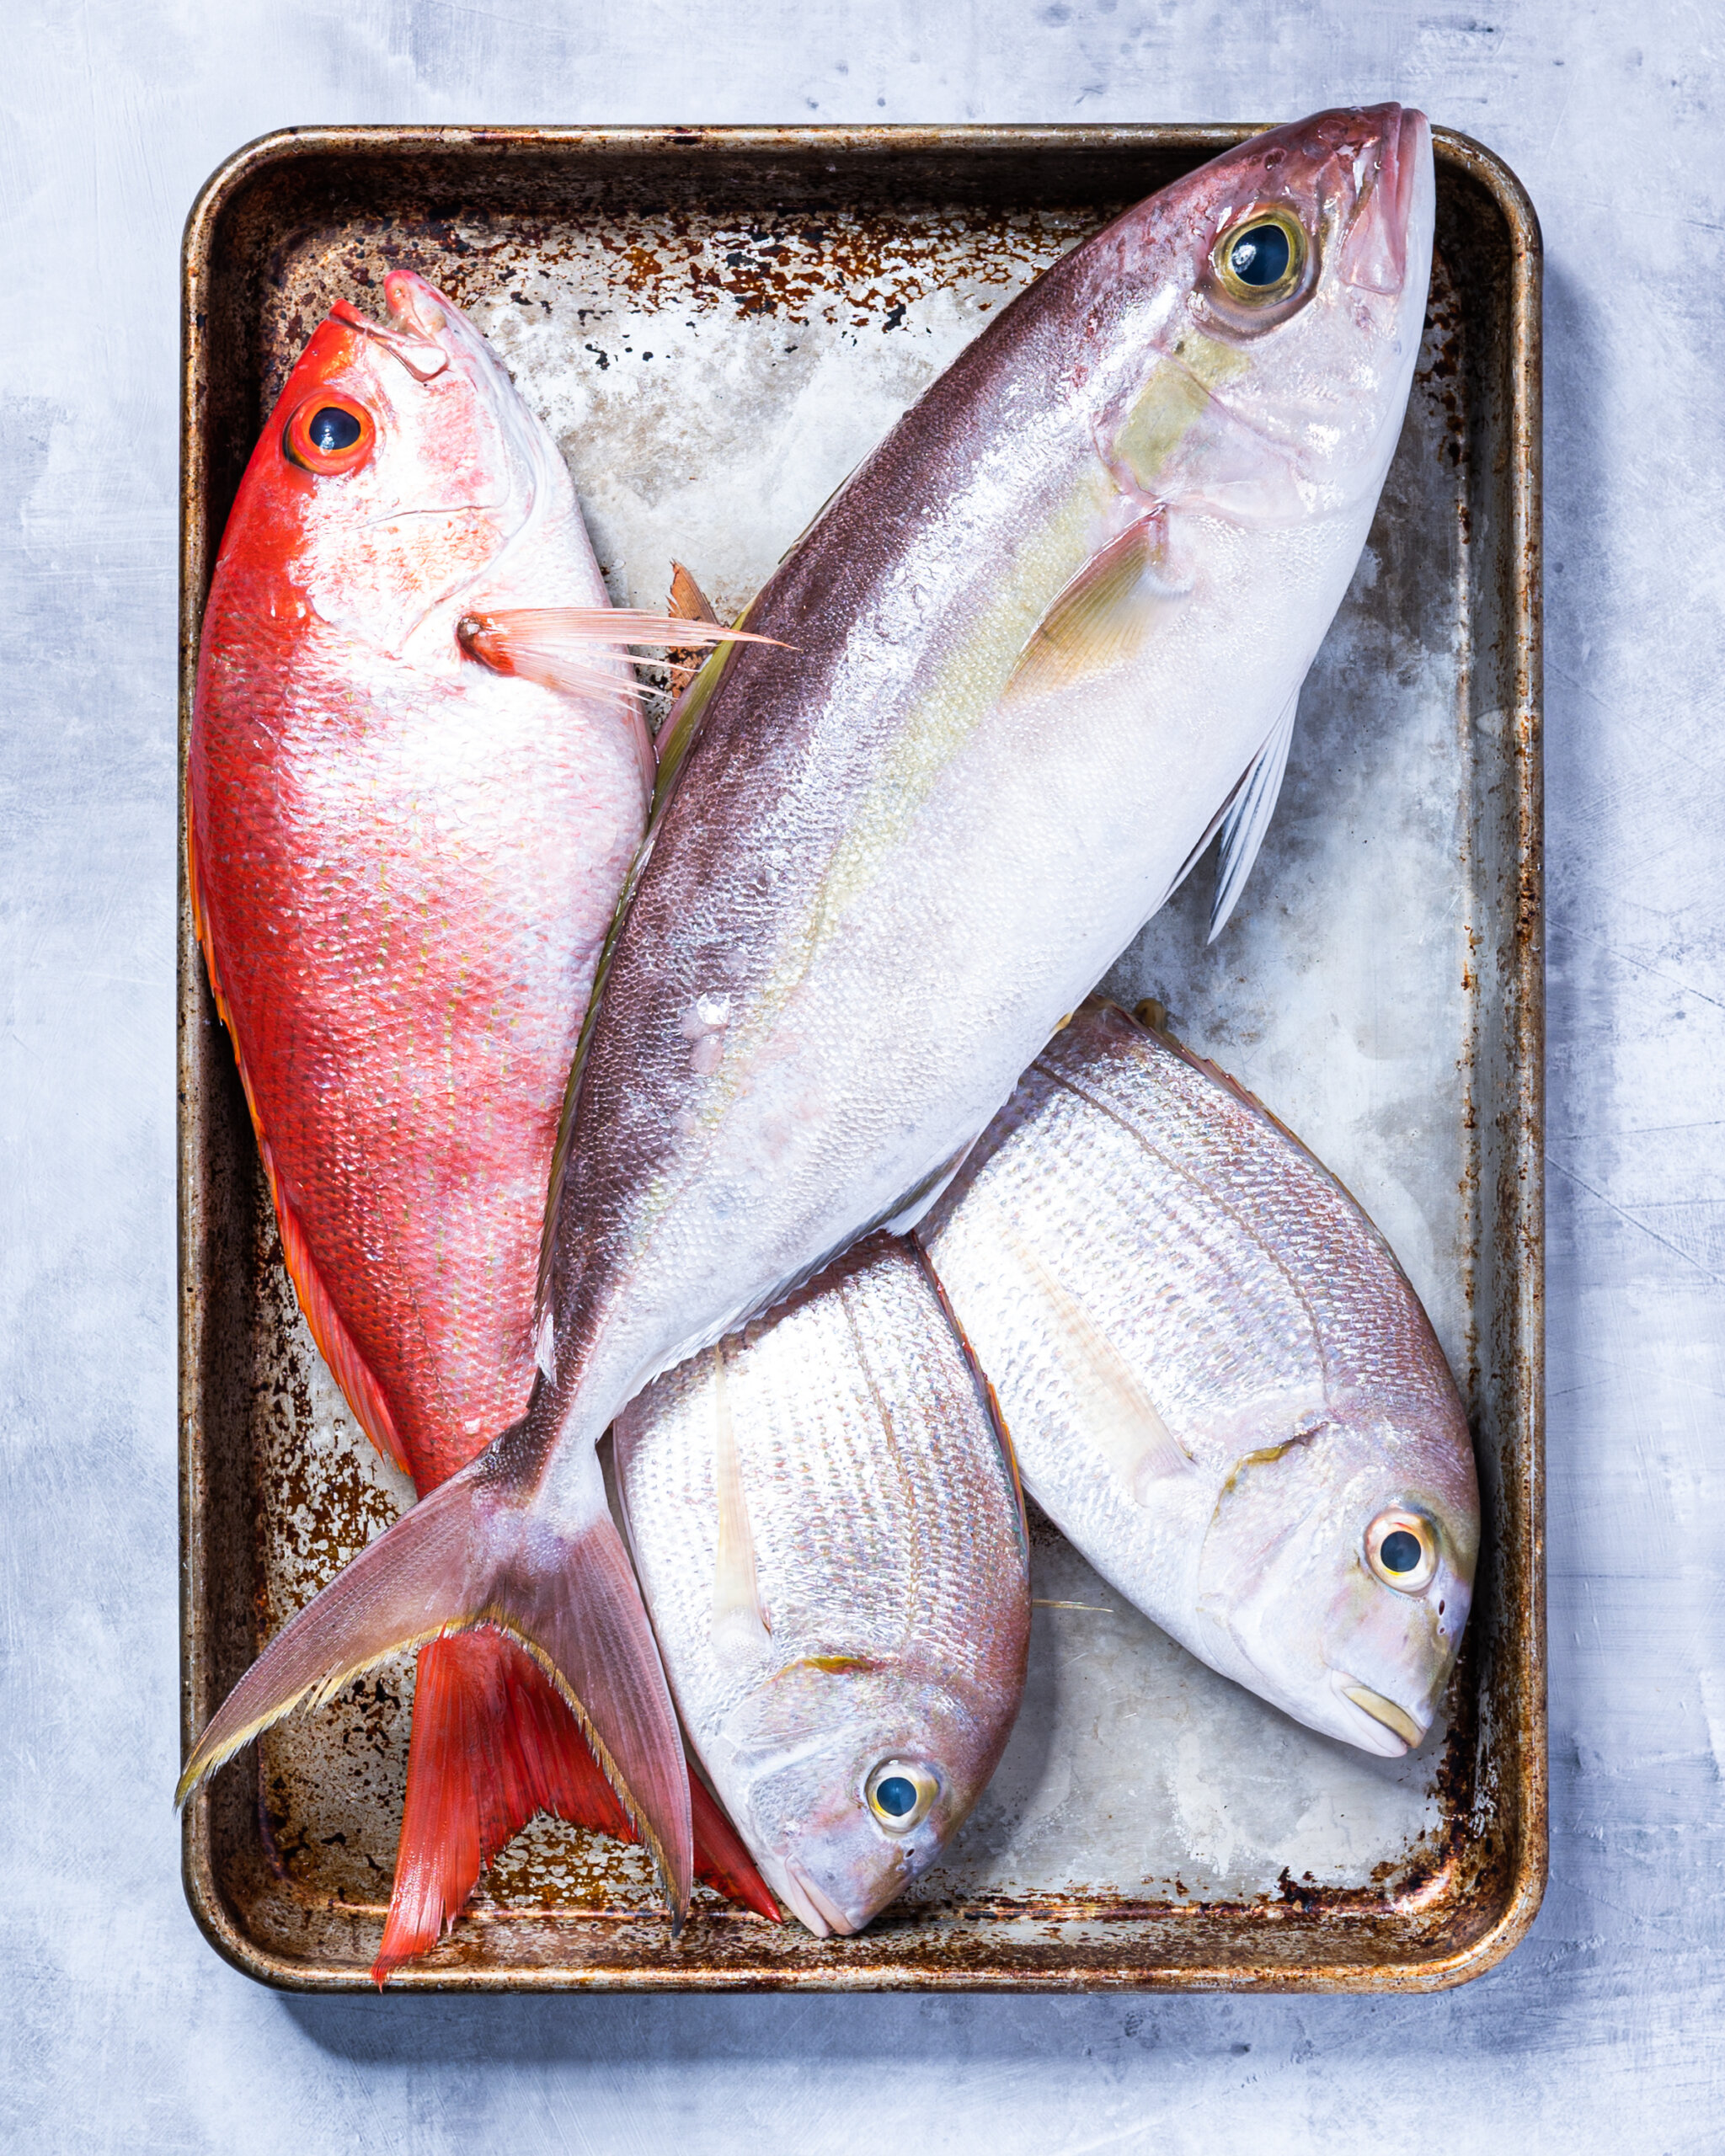 Fresh fish - lesser amberjack, vermillion snapper, and porgy